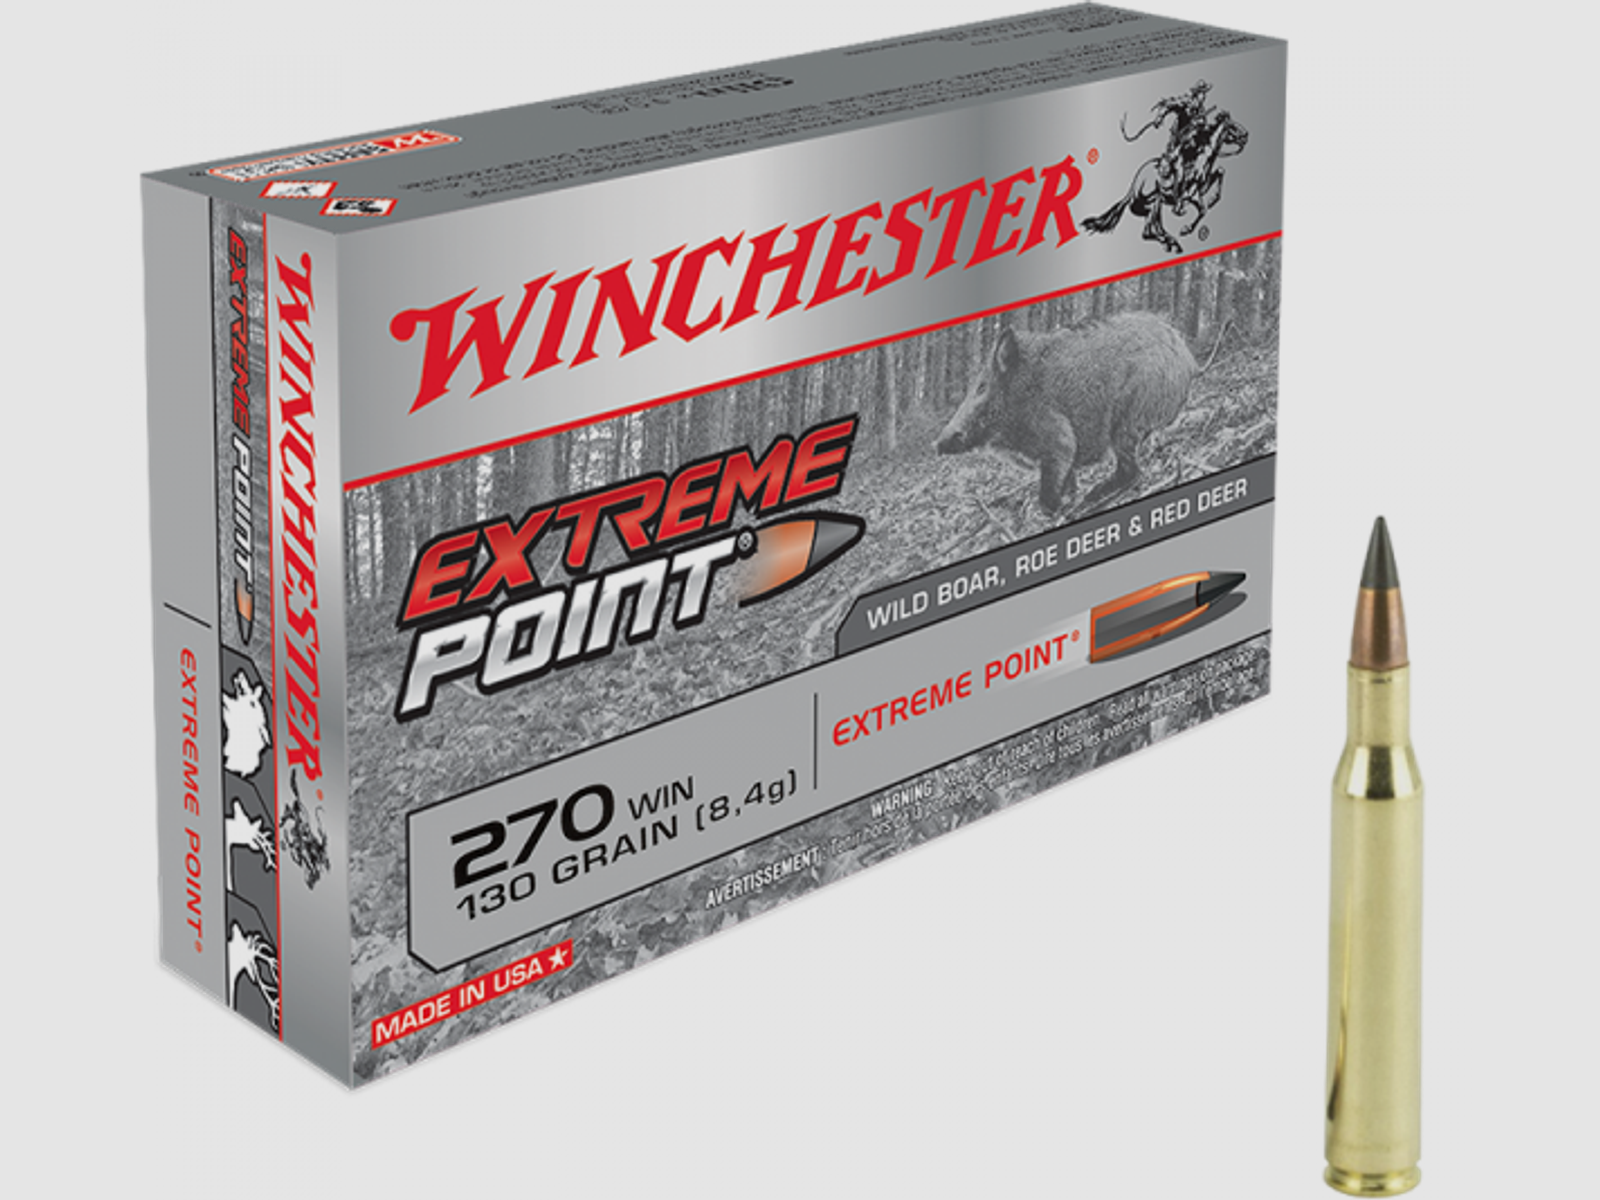 Winchester Extreme Point .270 Win 130 grs Büchsenpatronen